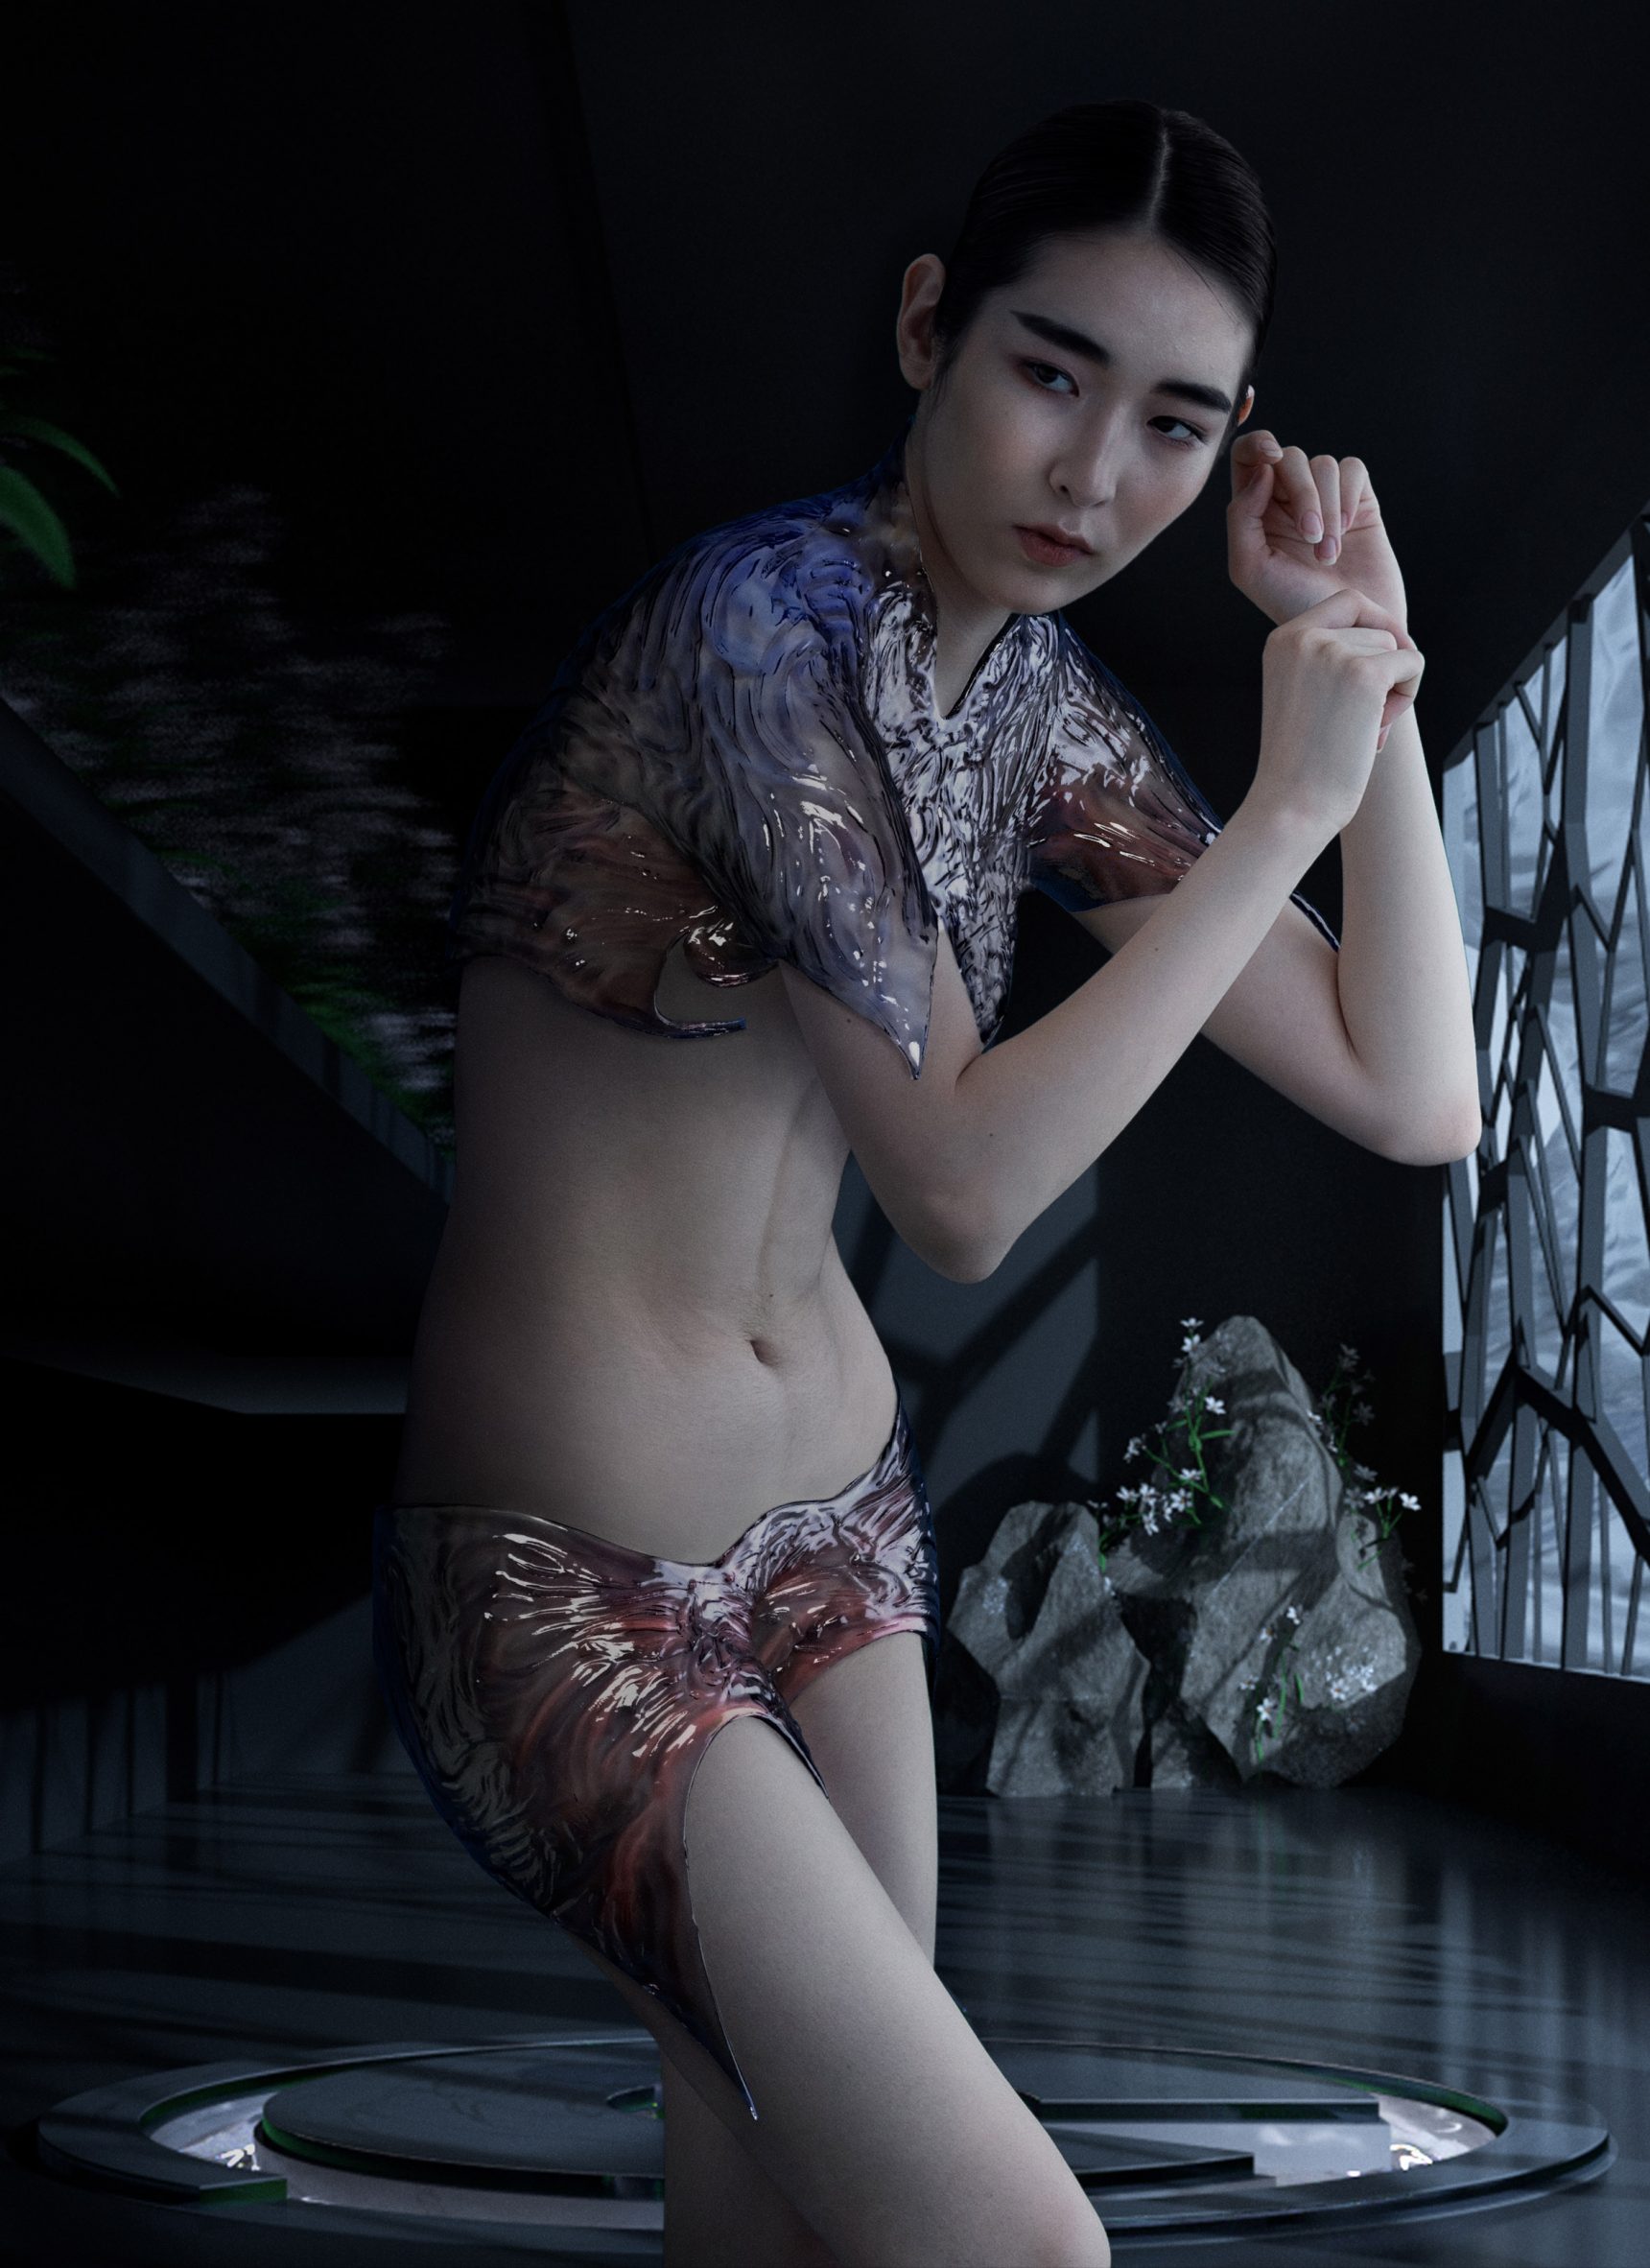 An avatar modeling underwear